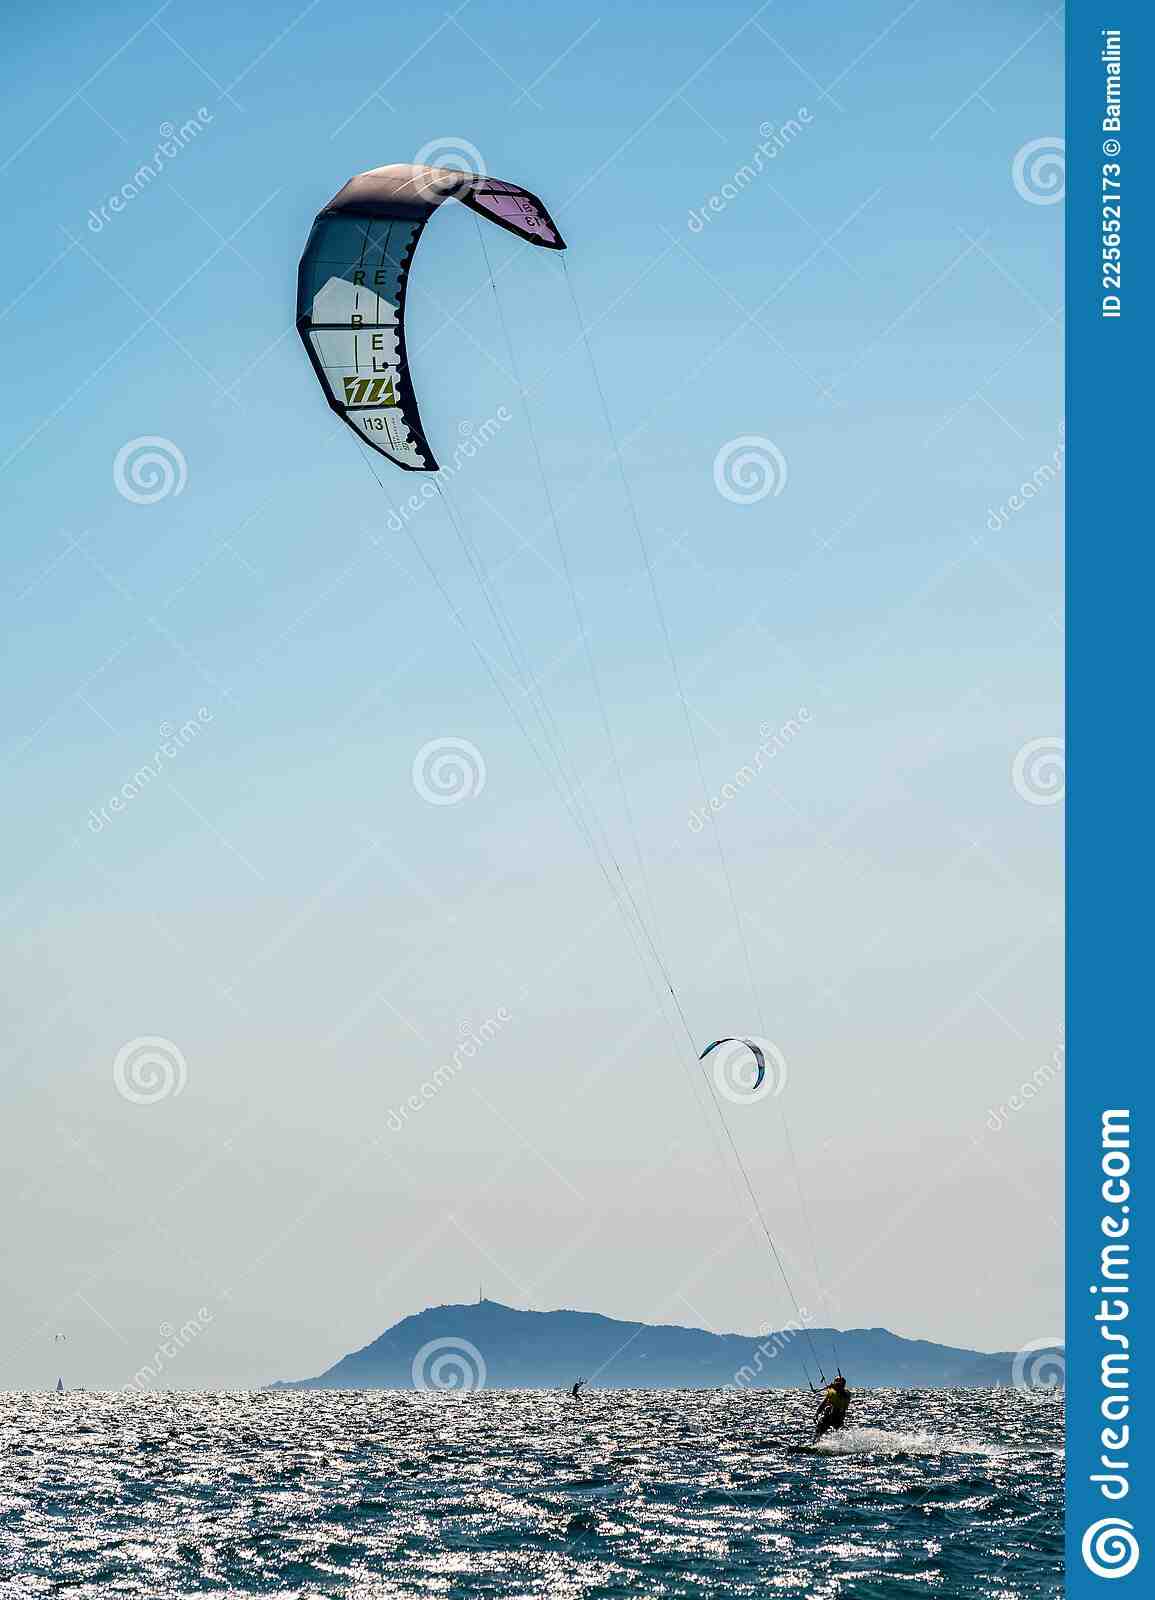 Où faire du kite surf en France ?